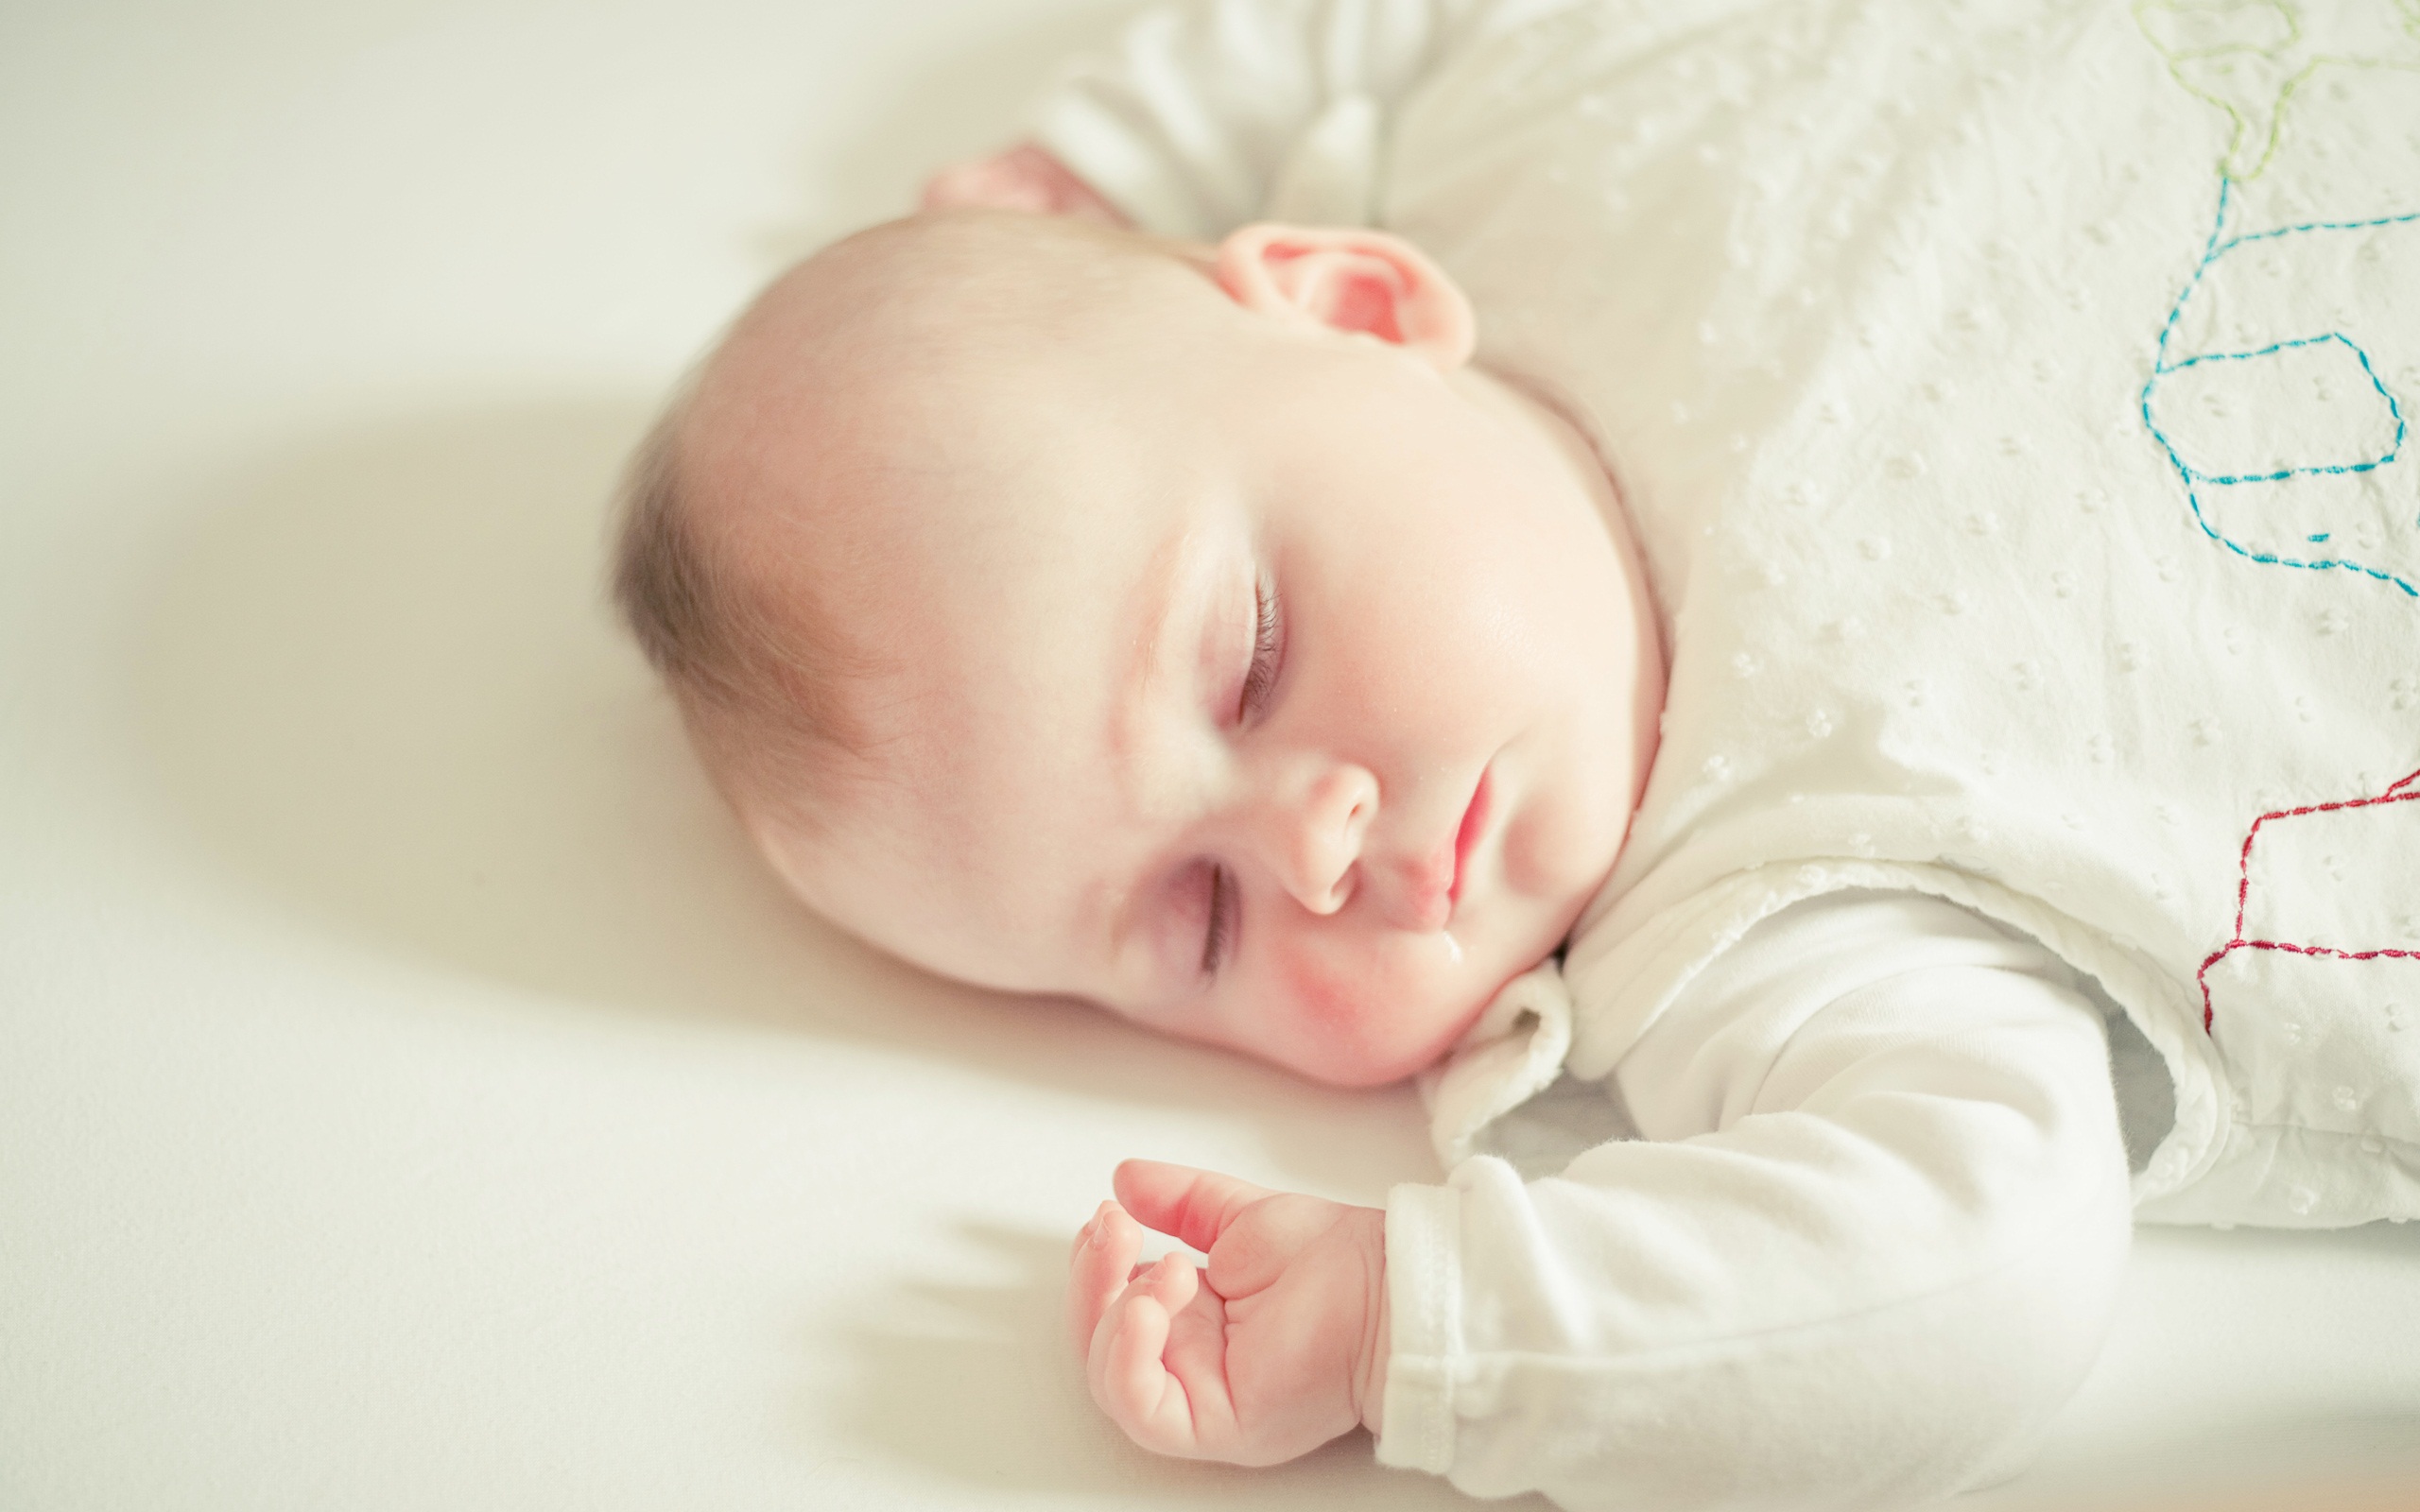 Cute Sleeping Baby664077923 - Cute Sleeping Baby - Sleeping, Cute, Baby